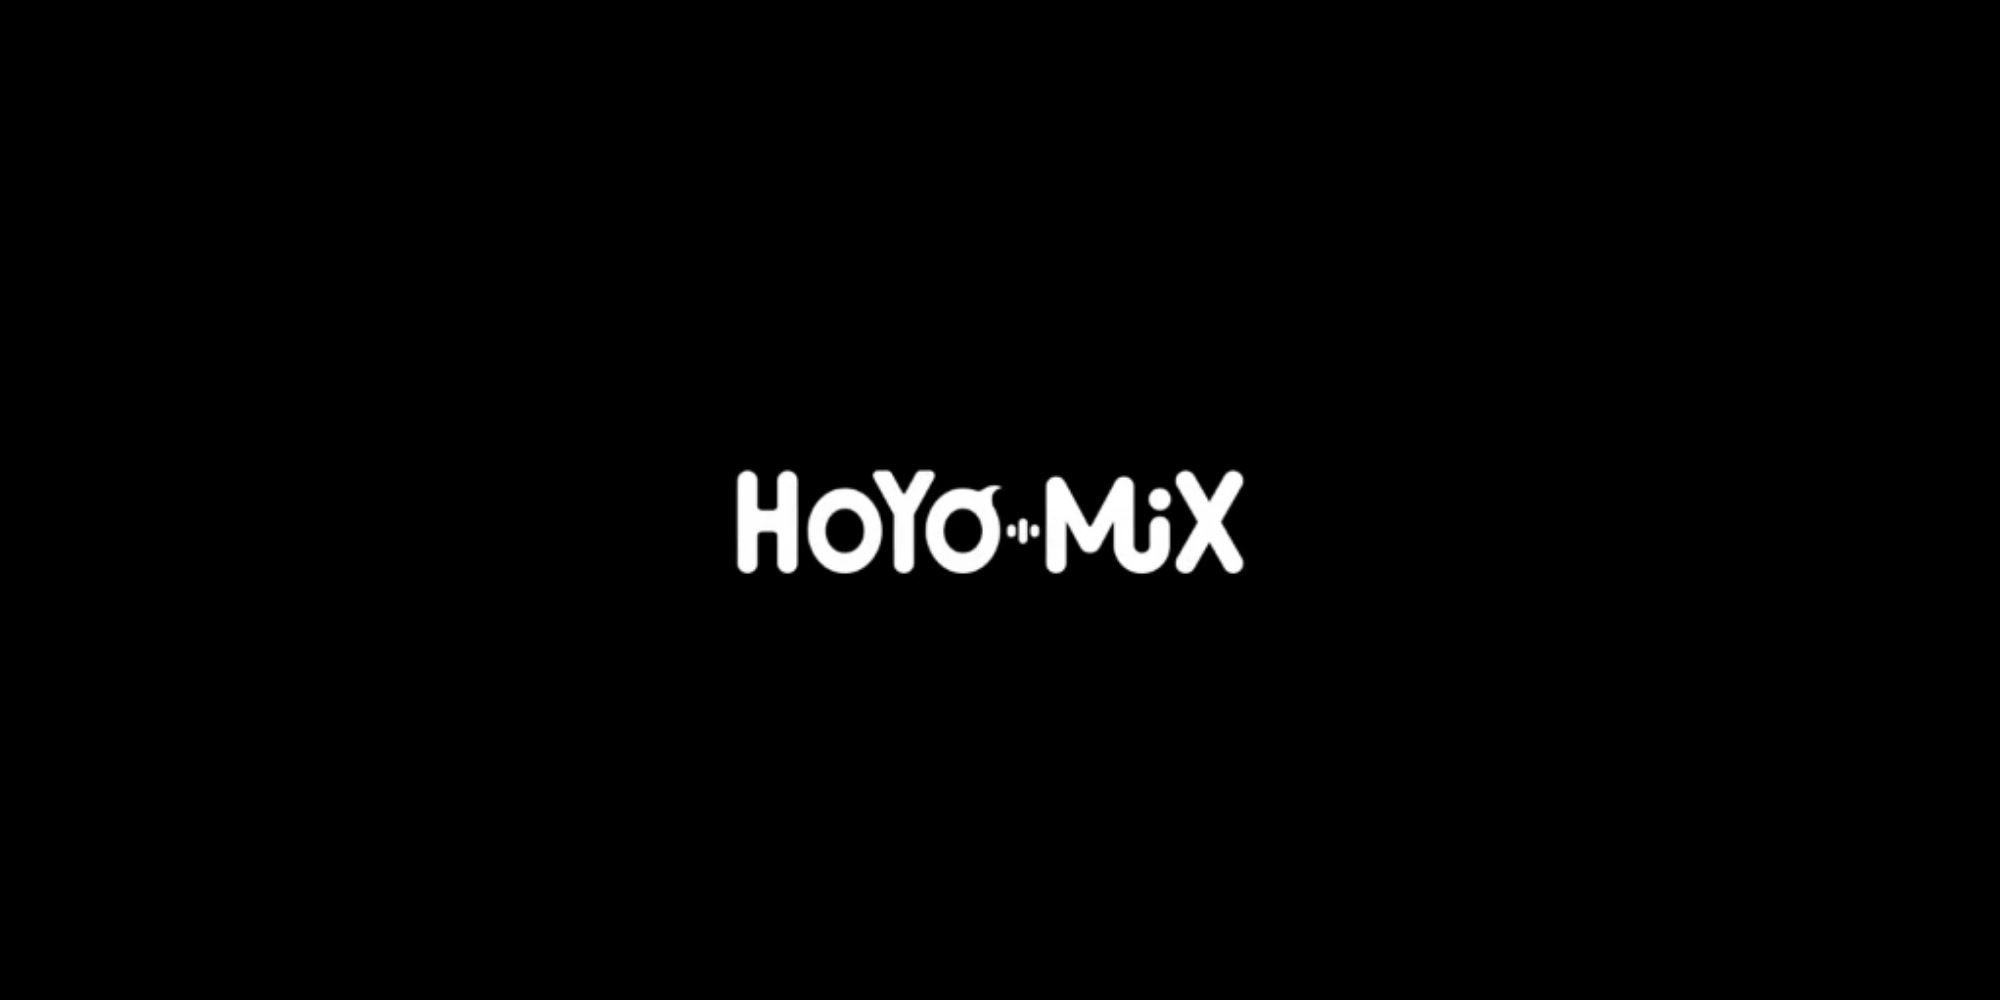 hoyo-mix logo in Genshin Impact